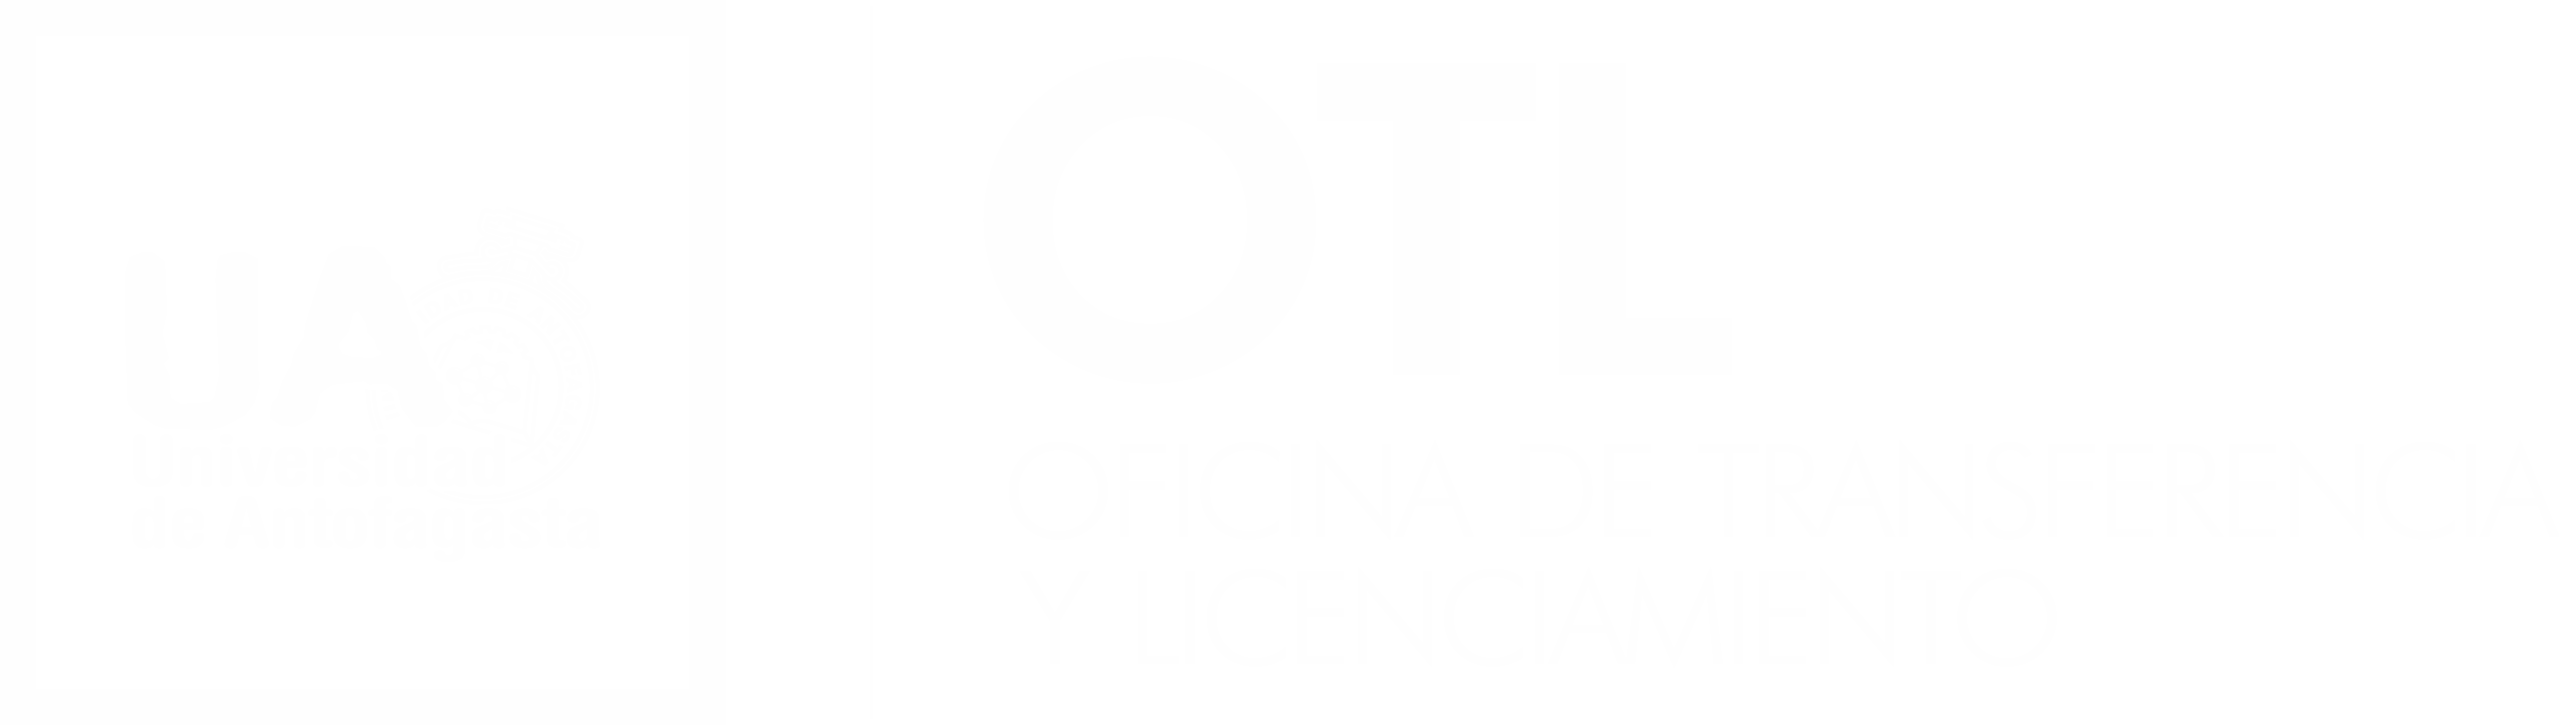 OTL-UA